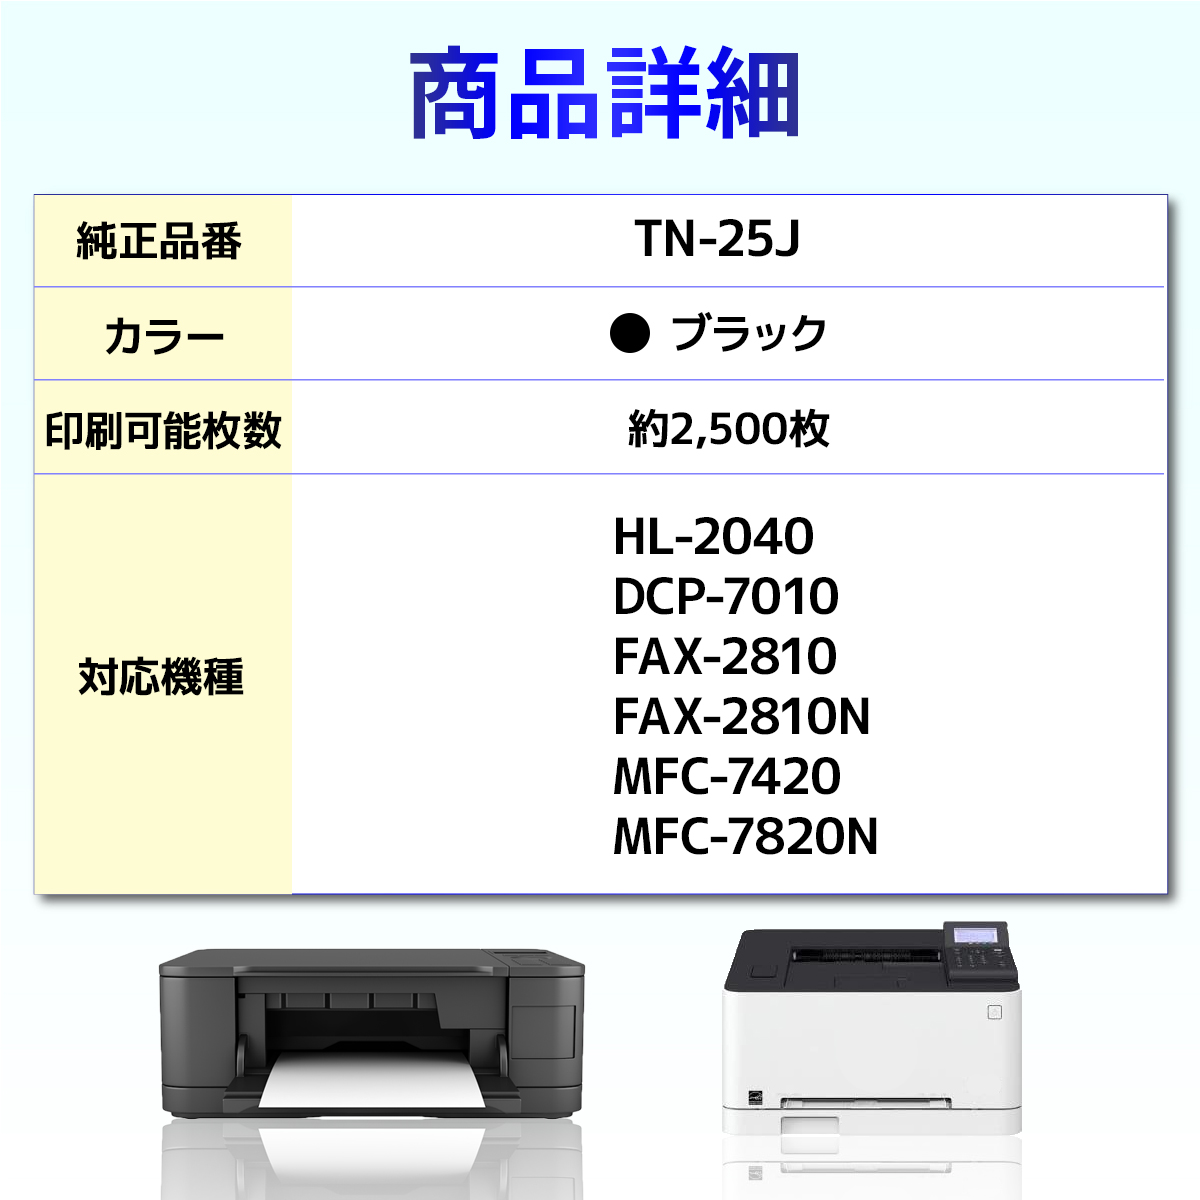 TN-25J TN25J HL-2040 DCP-7010 FAX-2810 FAX-2810N MFC-7420 MFC